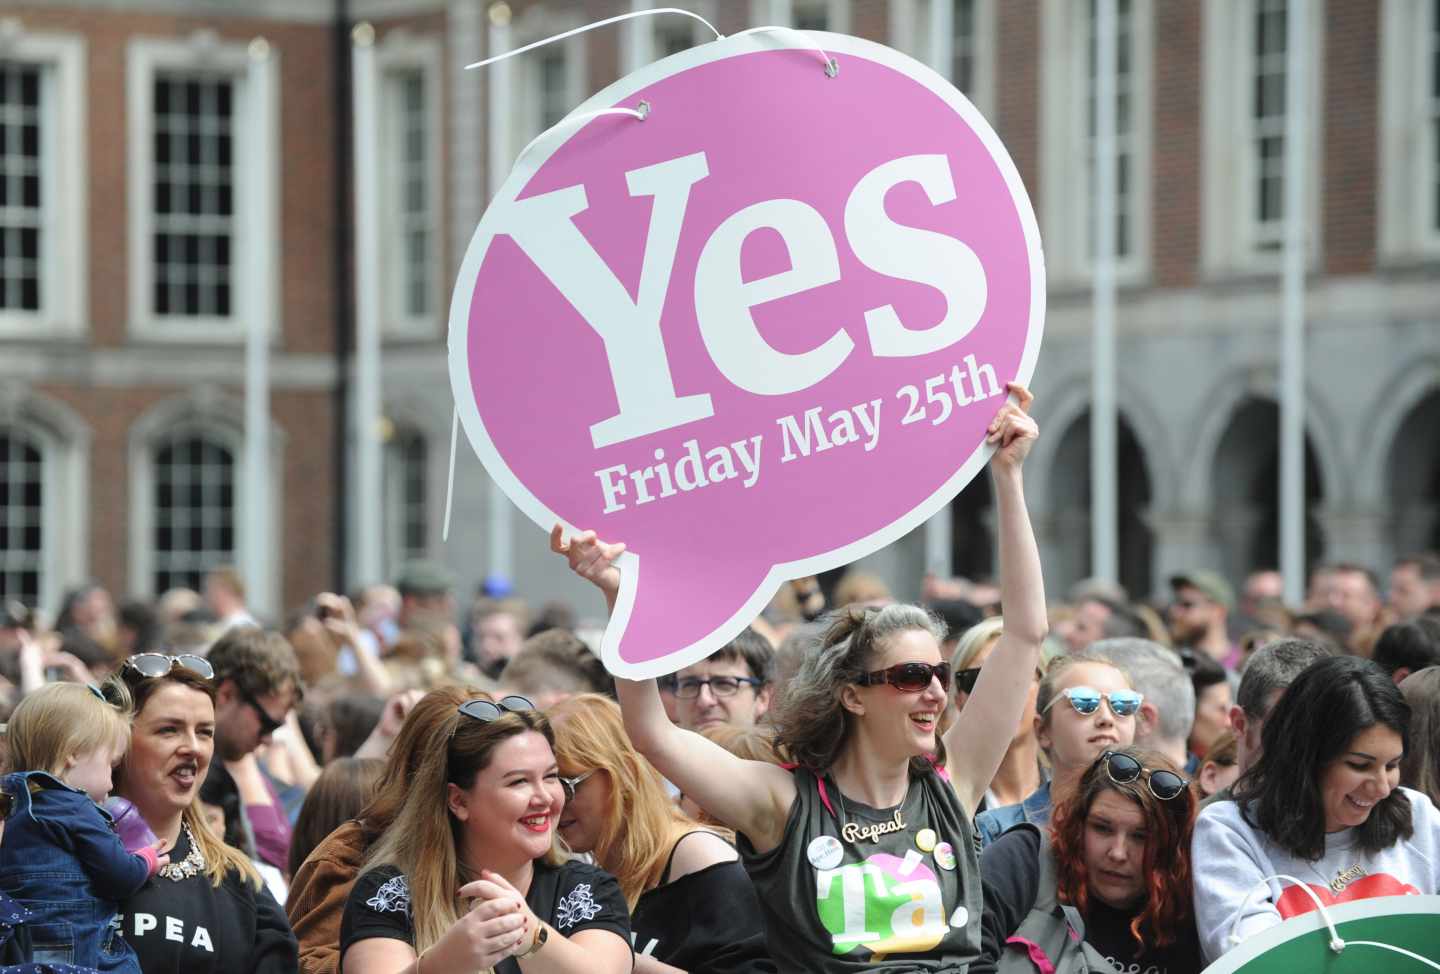 Celebraciones en las calles de Dublín (Irlanda) tras la victoria del sí a la liberalización del aborto en el referéndum de este viernes.